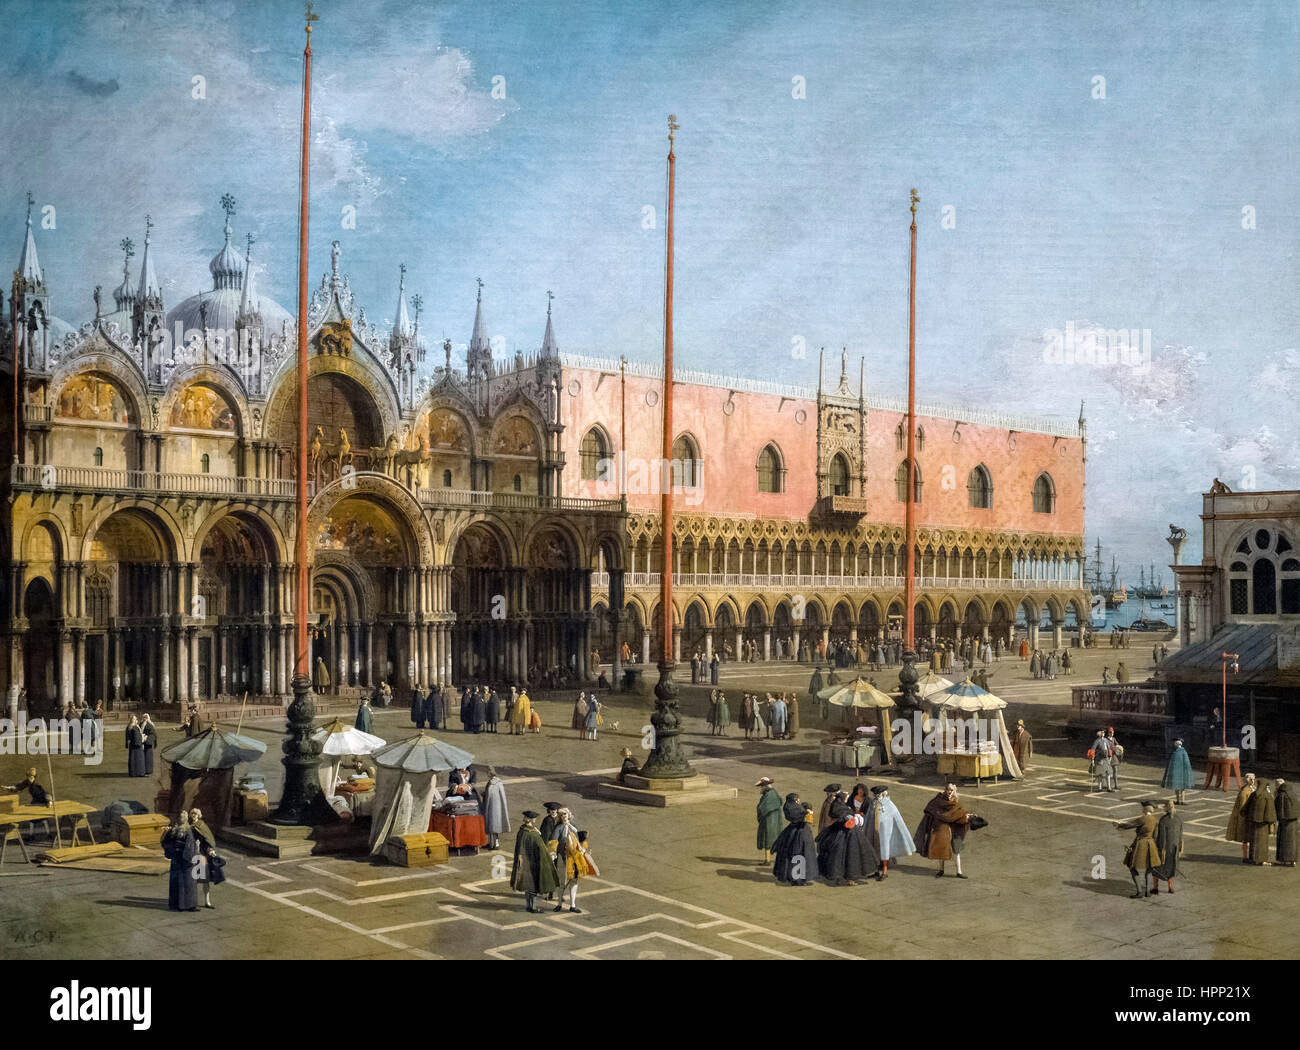 La peinture de Canaletto. La Place Saint-Marc, Venise (Piazza San Marco, Venise) par Canaletto (1697-1768), huile sur toile, c.1742-44 Banque D'Images